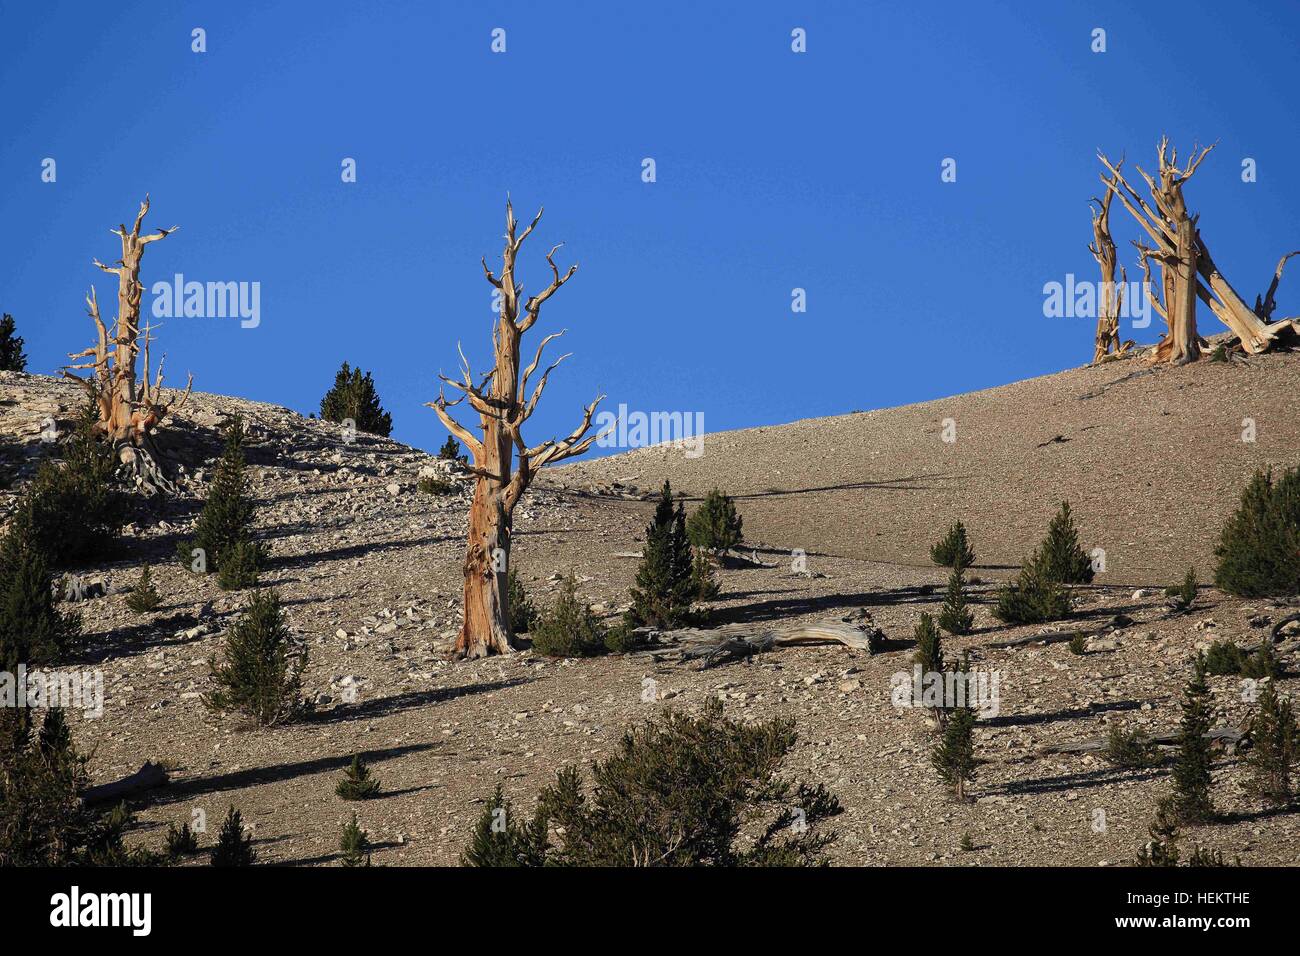 White Mountains, California, Stati Uniti d'America. 24Sep, 2016. Bristlecone pine trees in il Patriarca Grove la casa del più grande del mondo bristlecone pine, il Patriarca Tree. Le White Mountains della California e Nevada sono un guasto triangolare-blocco gamma di montagna rivolto verso la Sierra Nevada in tutta la tomaia Owens Valley. La sua casa per le antiche Bristlecone foresta di pini (Pinus longaeva). Il punto più alto della gamma è bianco picco di montagna, che a 14,252 ft (4,344 m), la vetta più alta in Mono County e la terza vetta più alta in California. Questo picco è in realtà un vulcano estinto in aumento di circa 1.600 ft Foto Stock